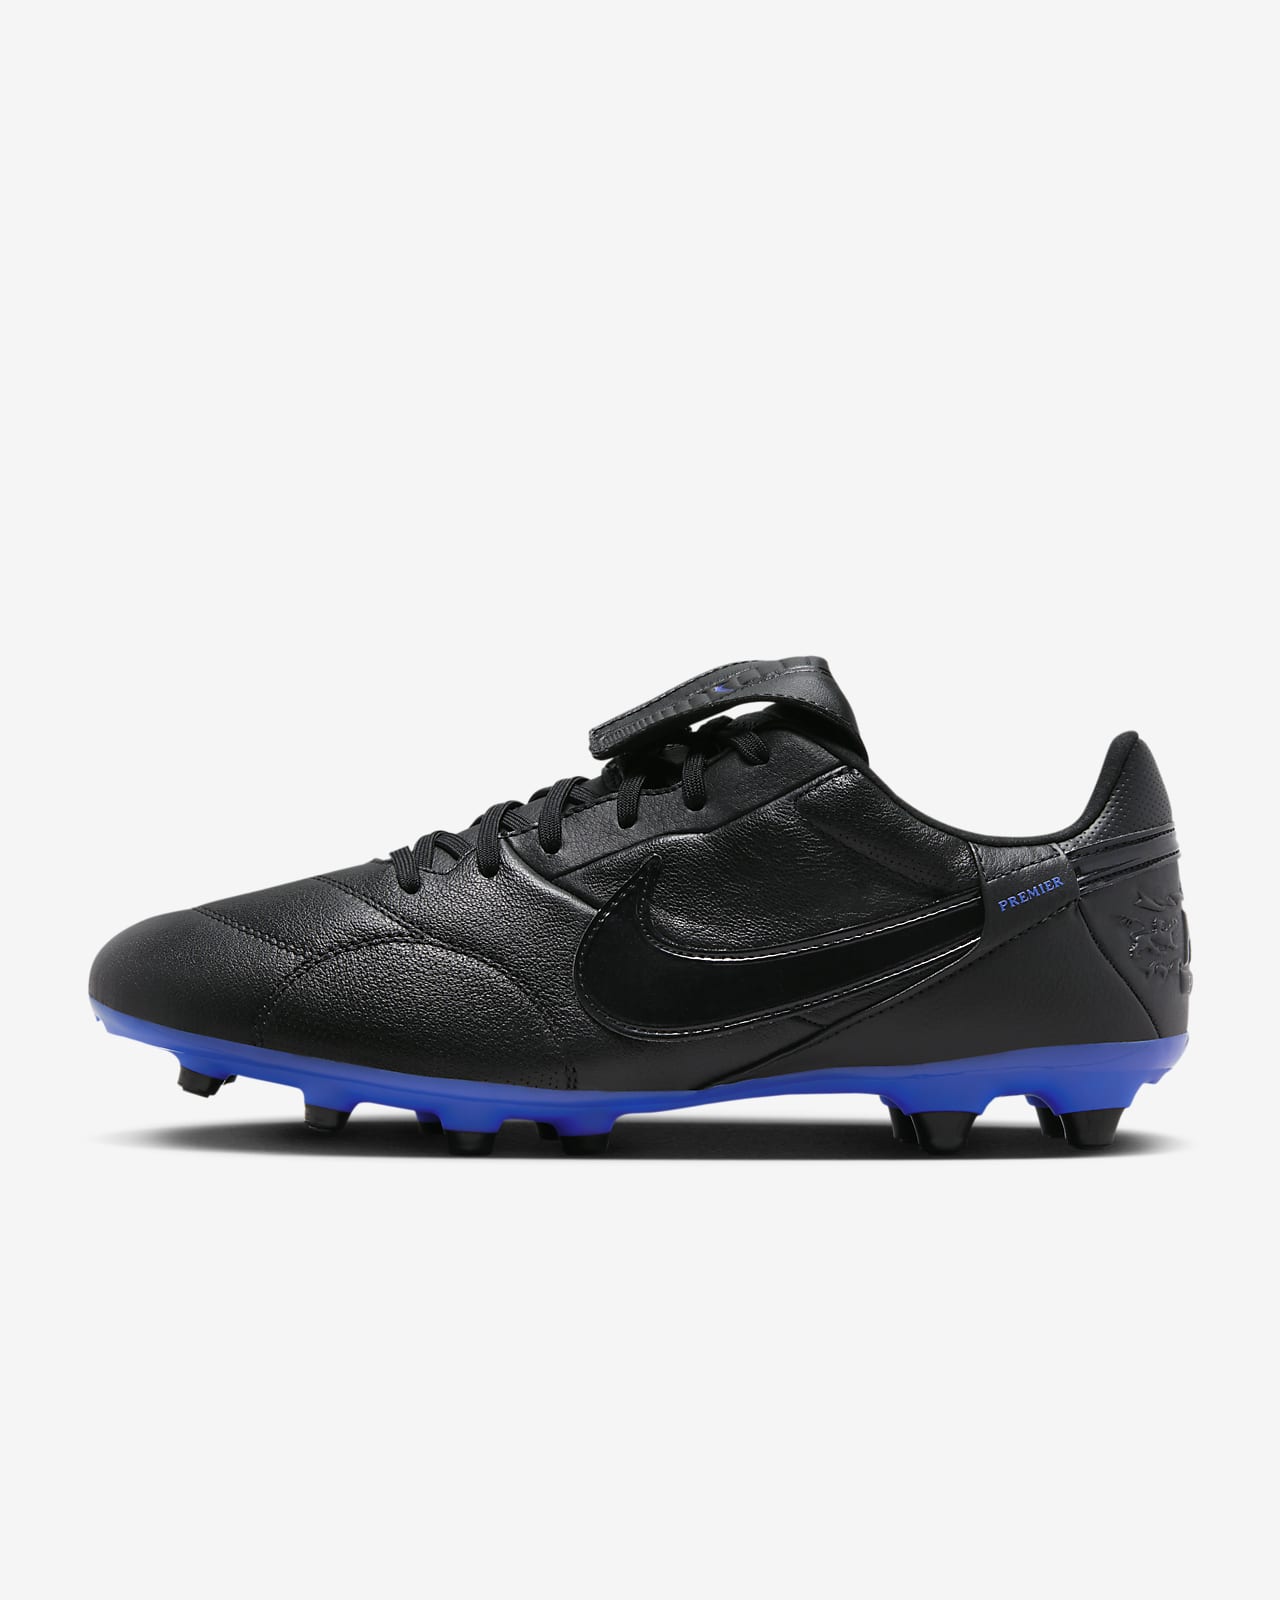 Ποδοσφαιρικά παπούτσια χαμηλού προφίλ για φυσικές σκληρές επιφάνειες NikePremier 3